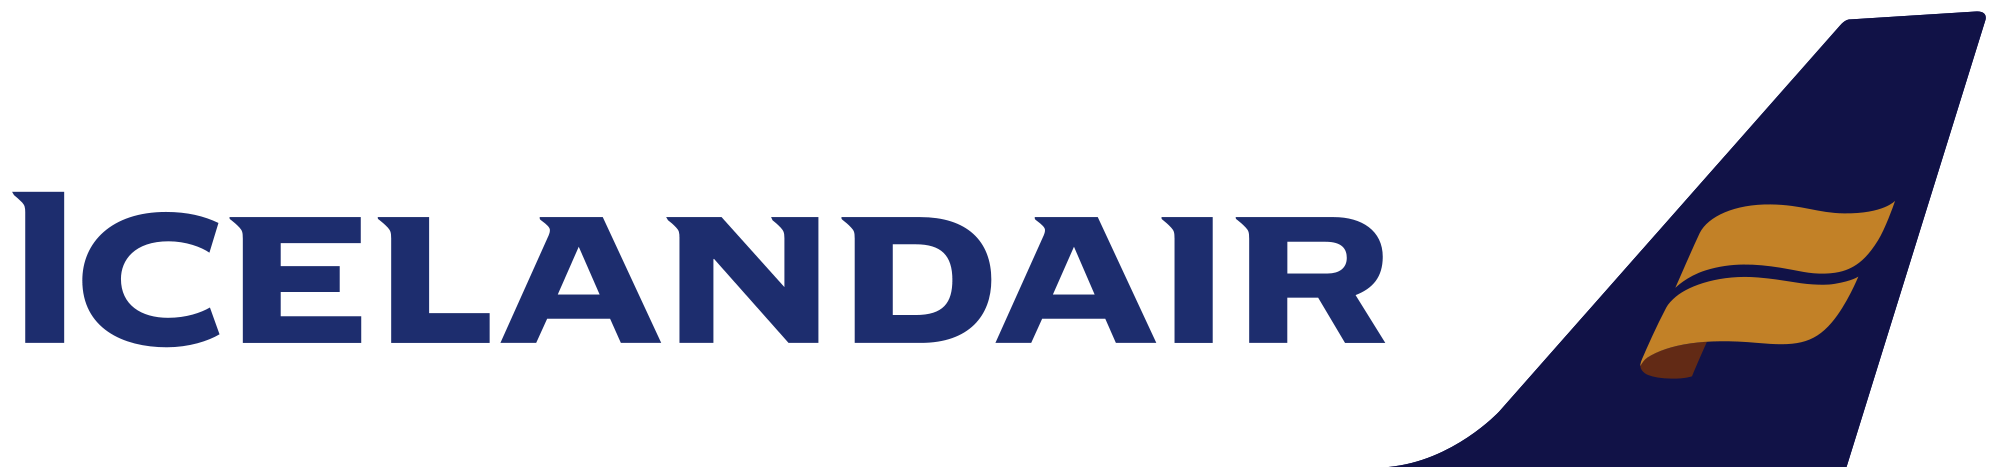 Icelandair_logo.png